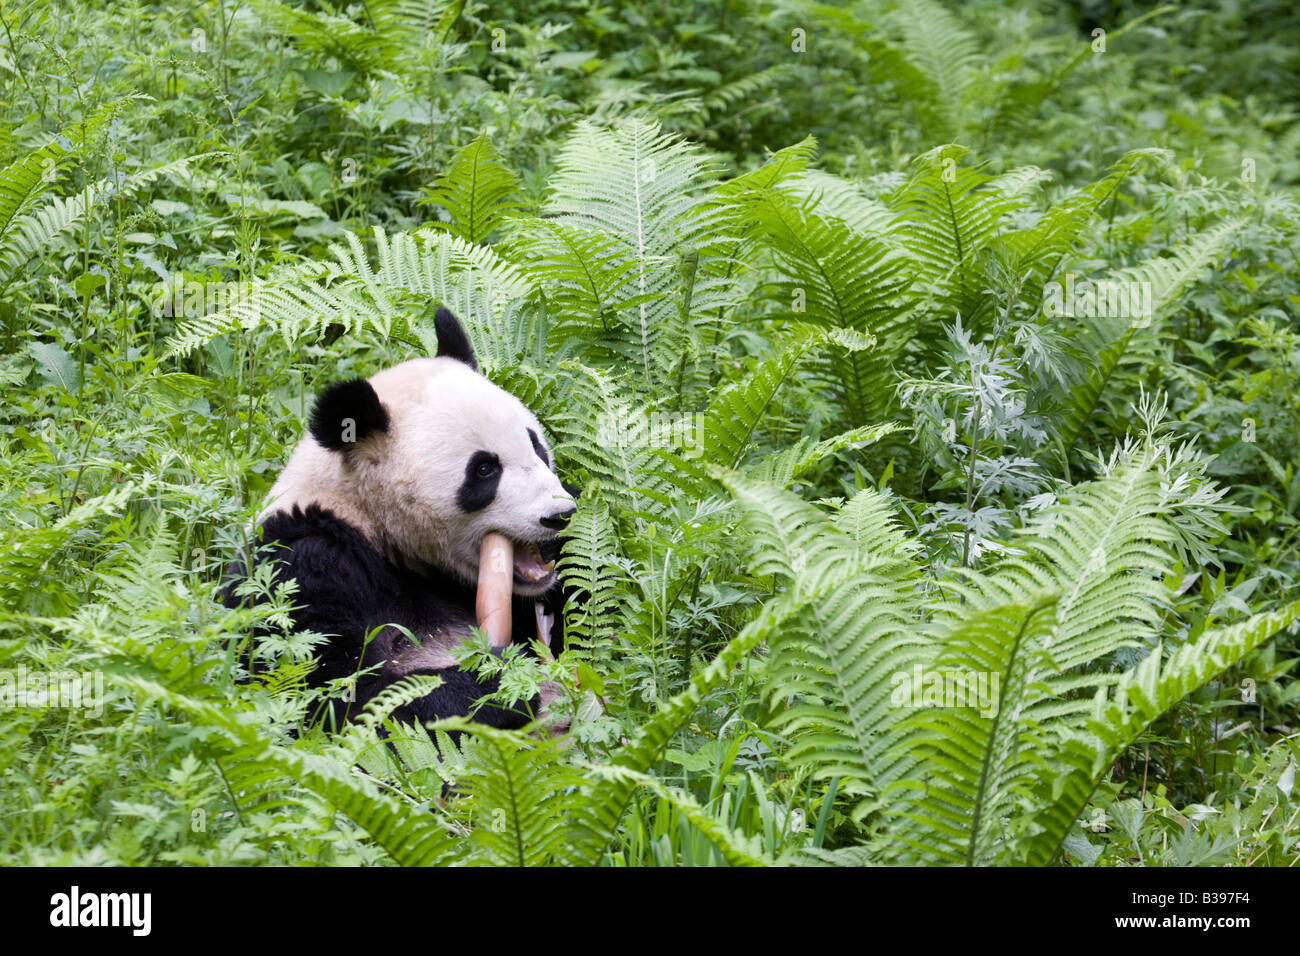 Giant Panda feeding on bamboo, Wolong, China Stock Photo